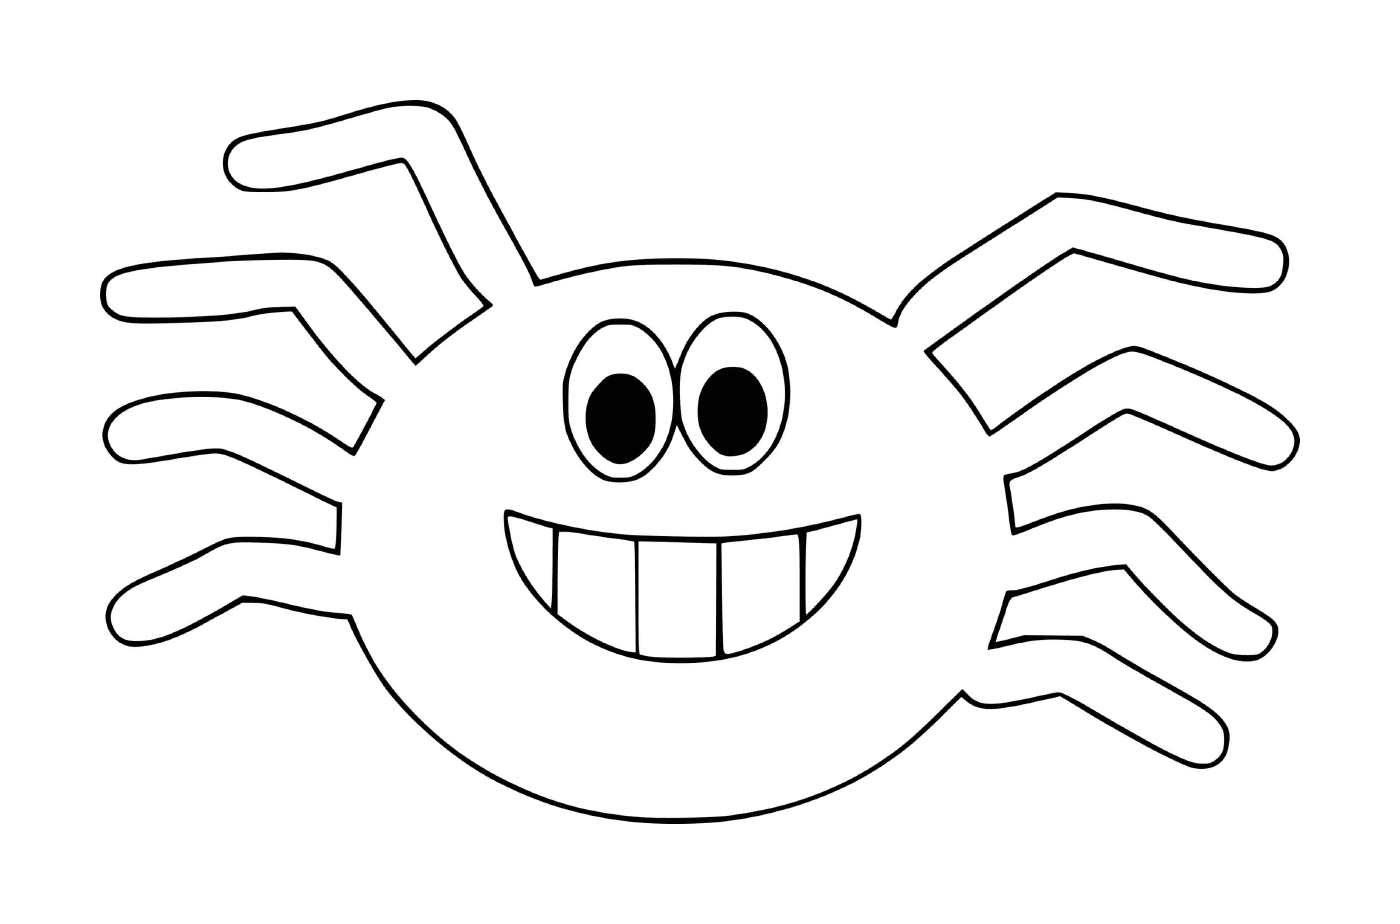   Un crabe souriant 